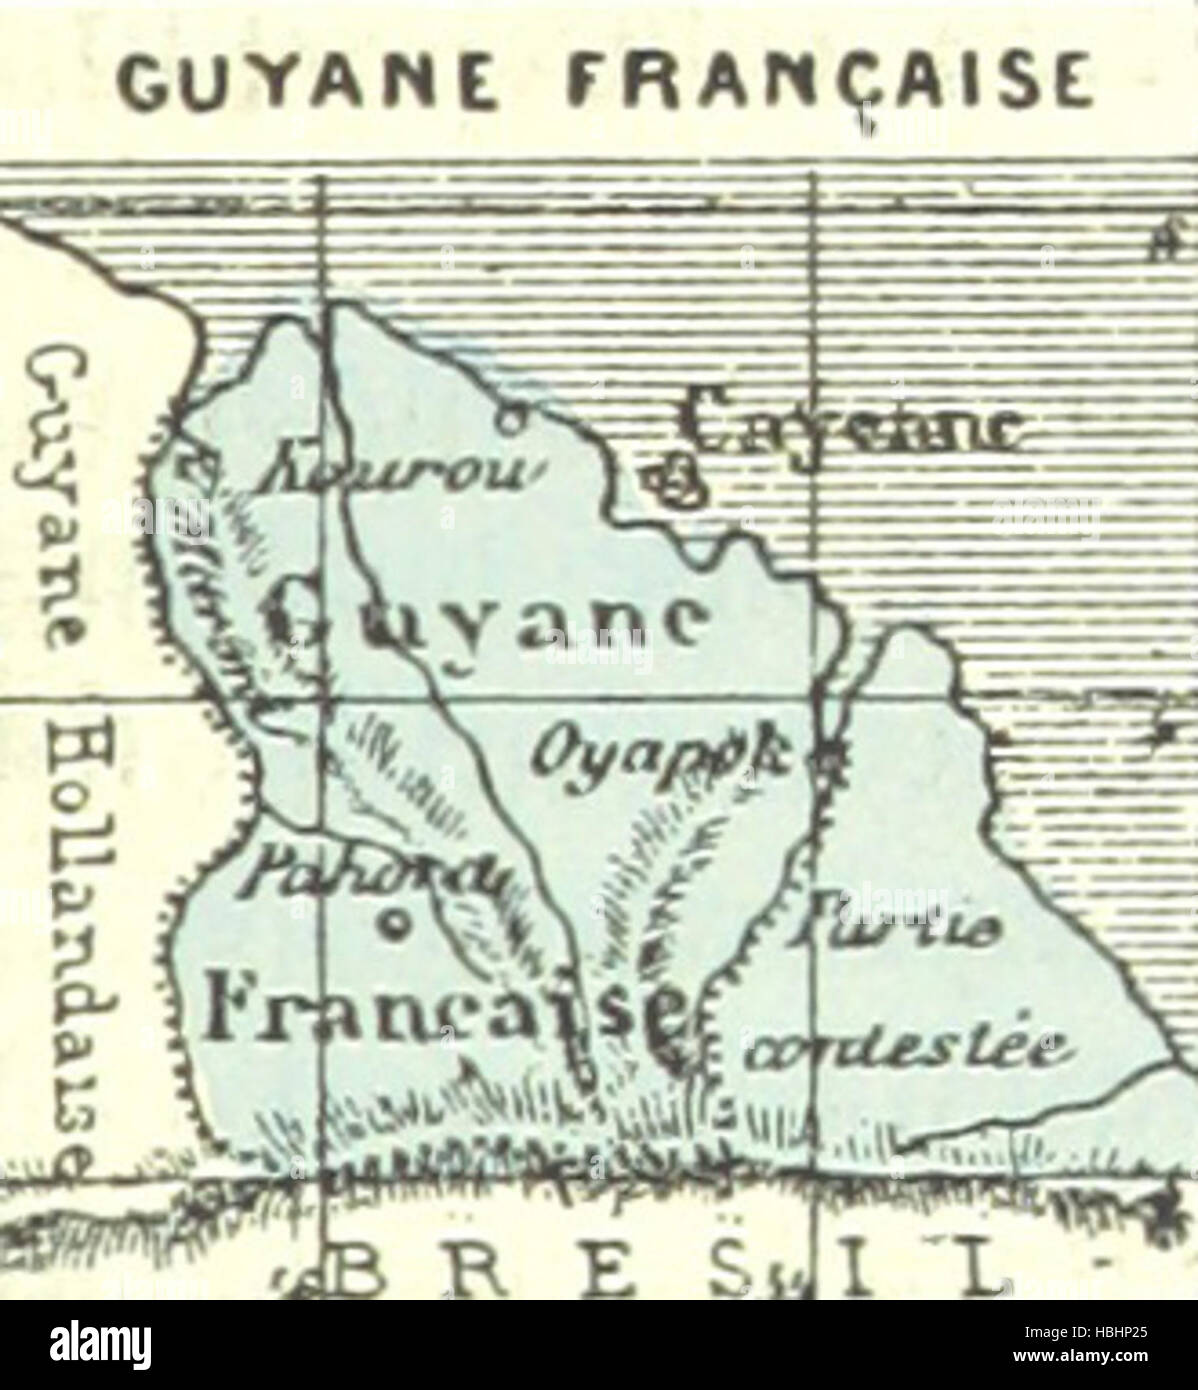 Bild entnommen Seite 765 von "La France Pittoresque, Ou Beschreibung Par Départements De La France et de ses Kolonien Bild entnommen Seite 765 von" La France Pittoresque, Ou Stockfoto